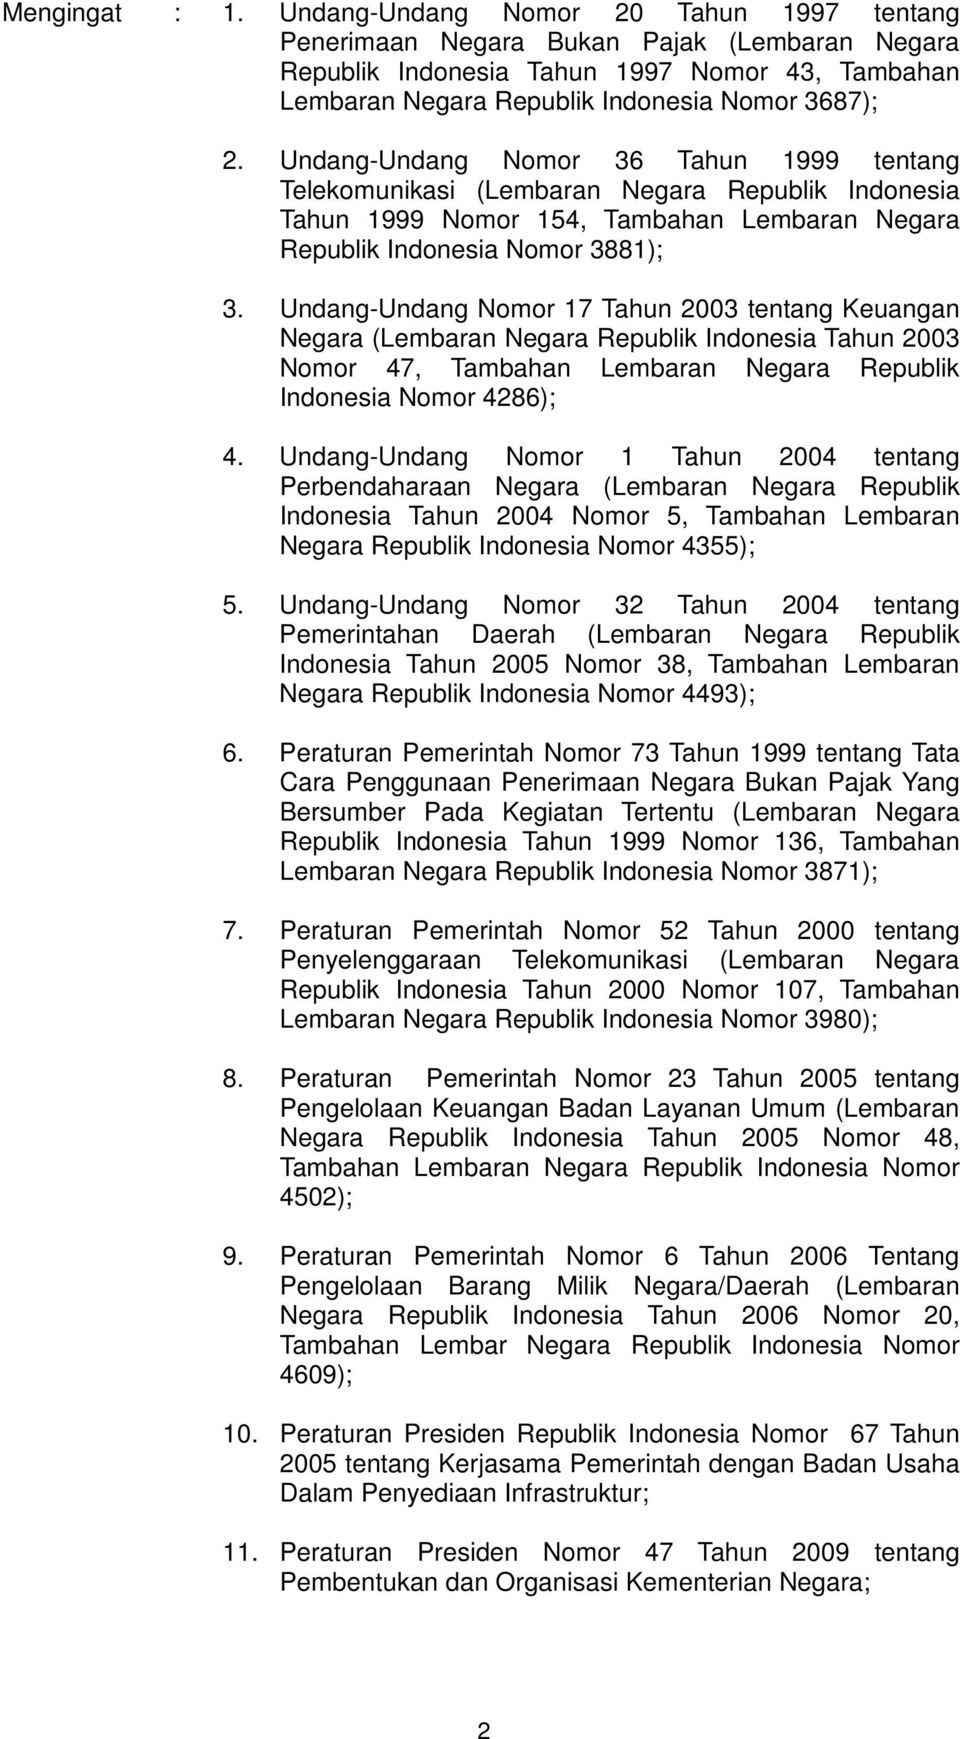 Undang-Undang Nomor 36 Tahun 1999 tentang Telekomunikasi (Lembaran Negara Republik Indonesia Tahun 1999 Nomor 154, Tambahan Lembaran Negara Republik Indonesia Nomor 3881); 3.